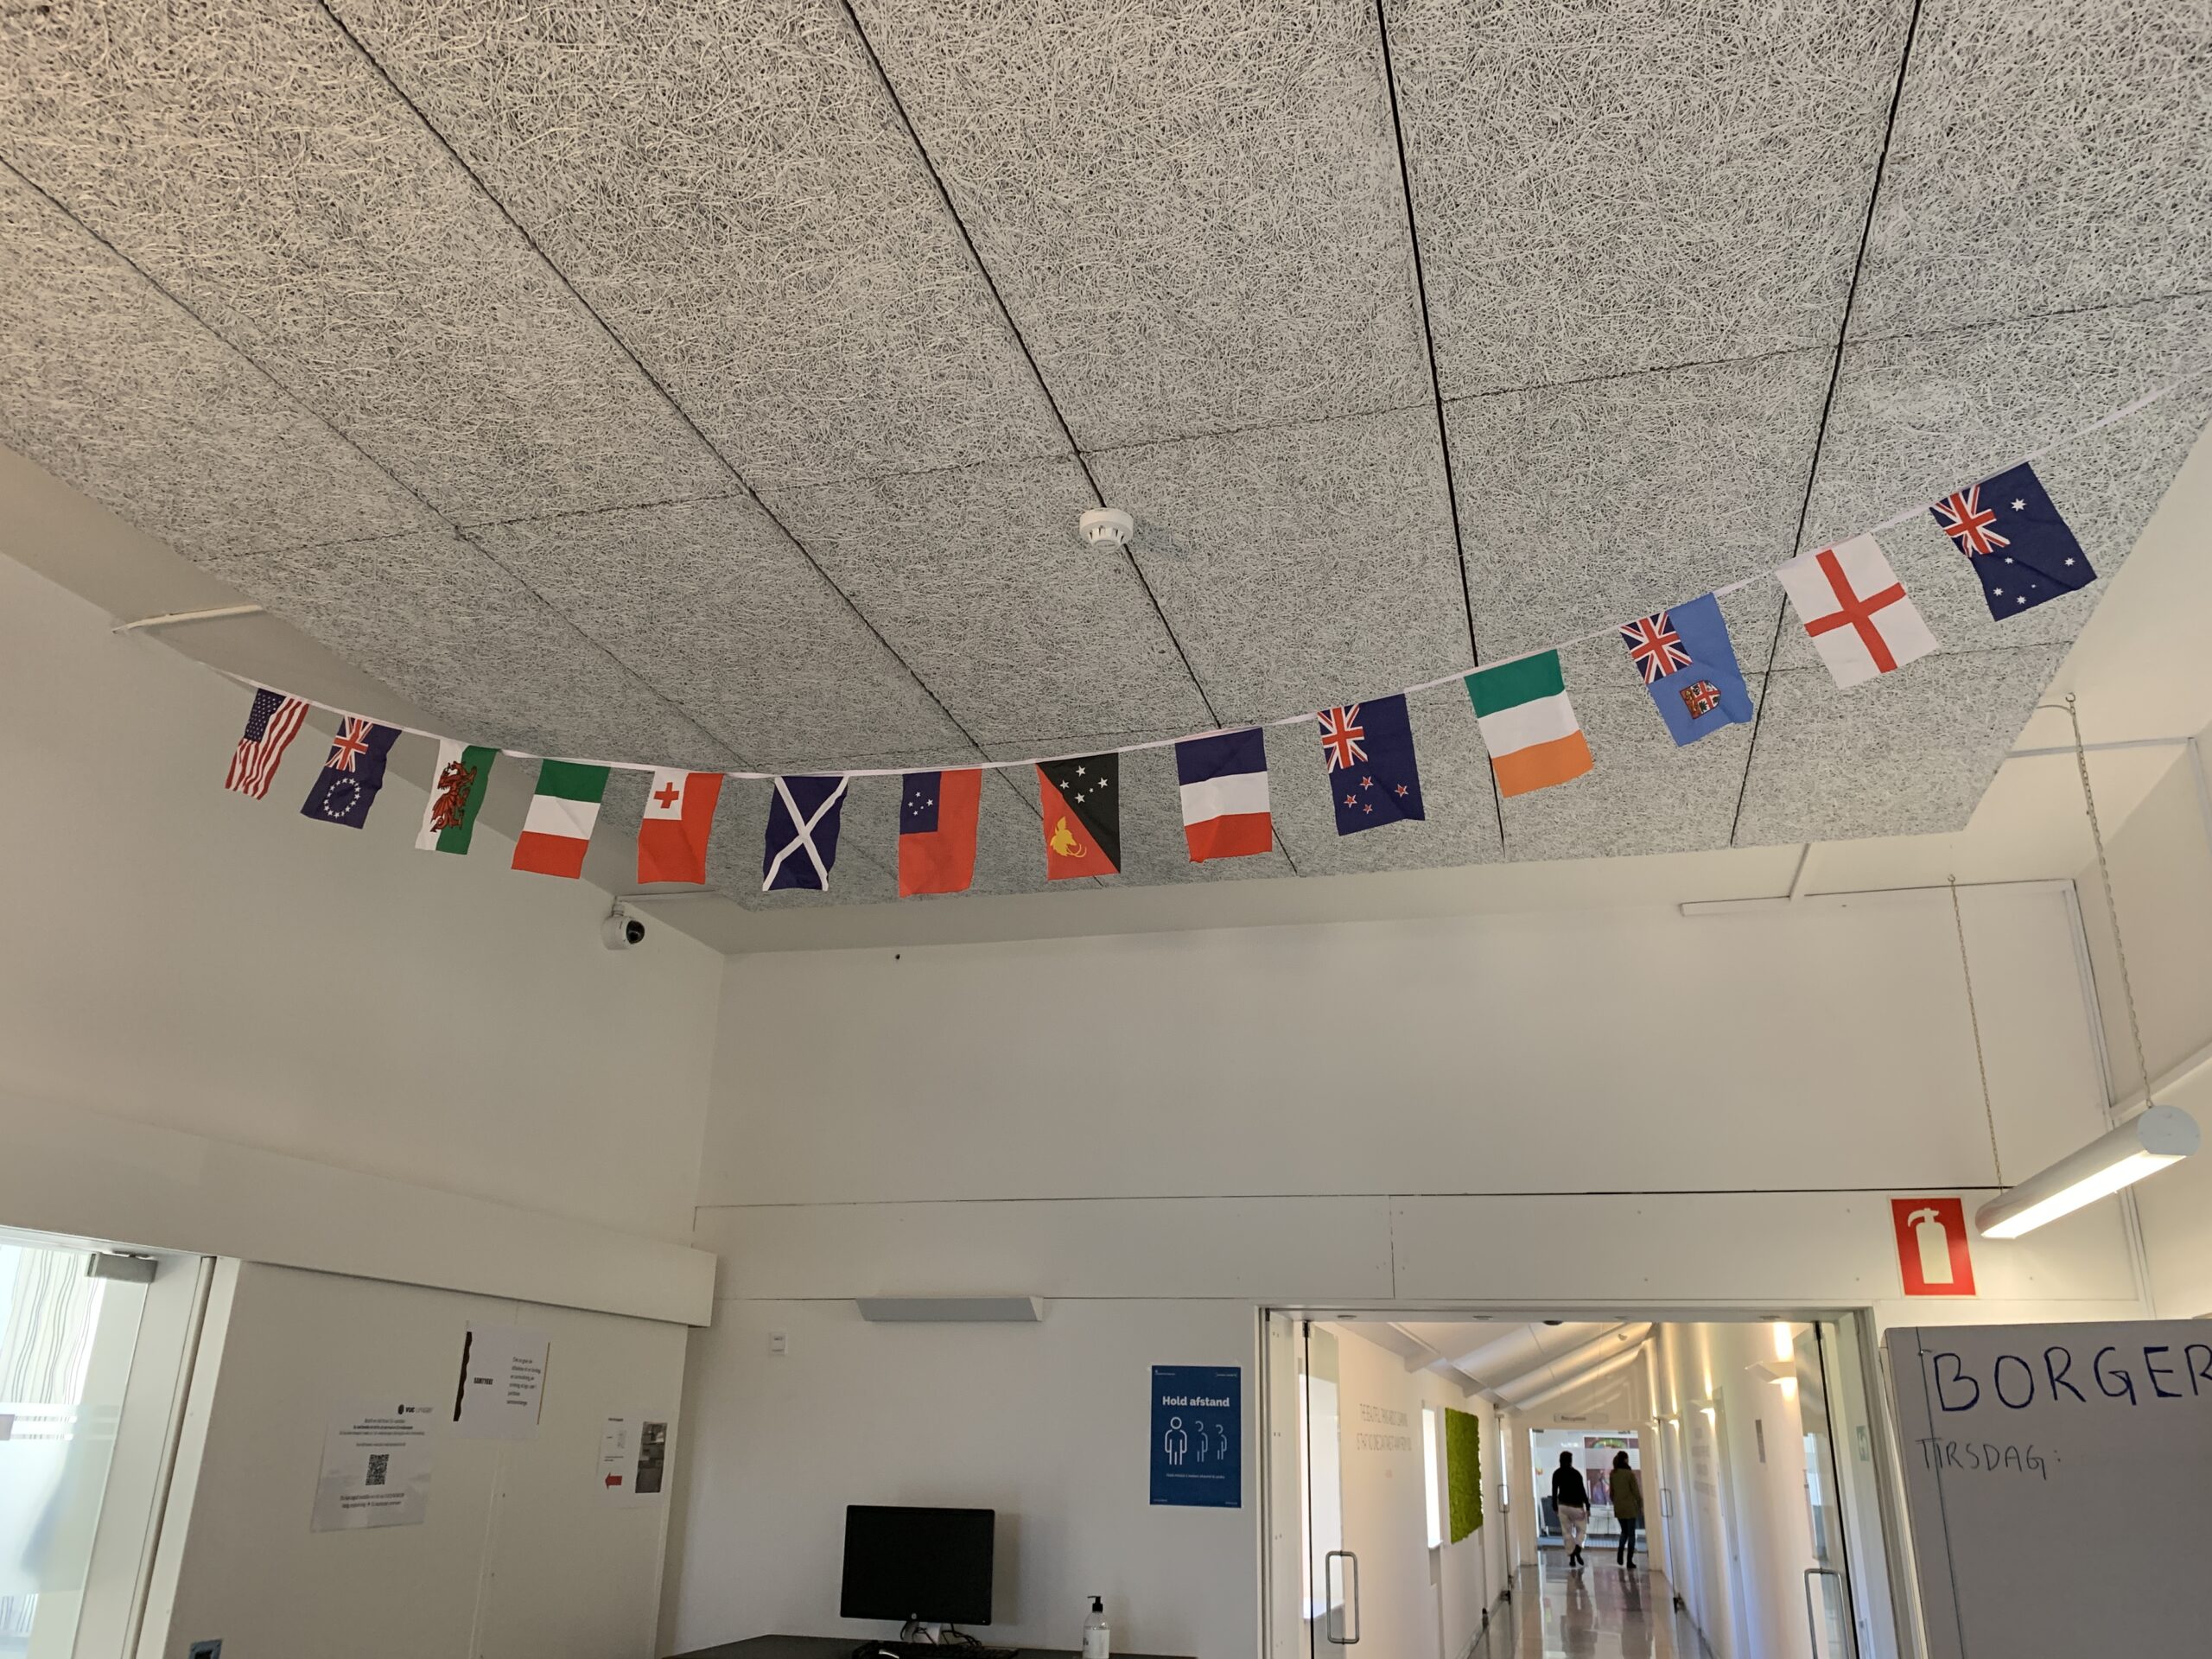 Flag fra hele verden var hængt op på skolen